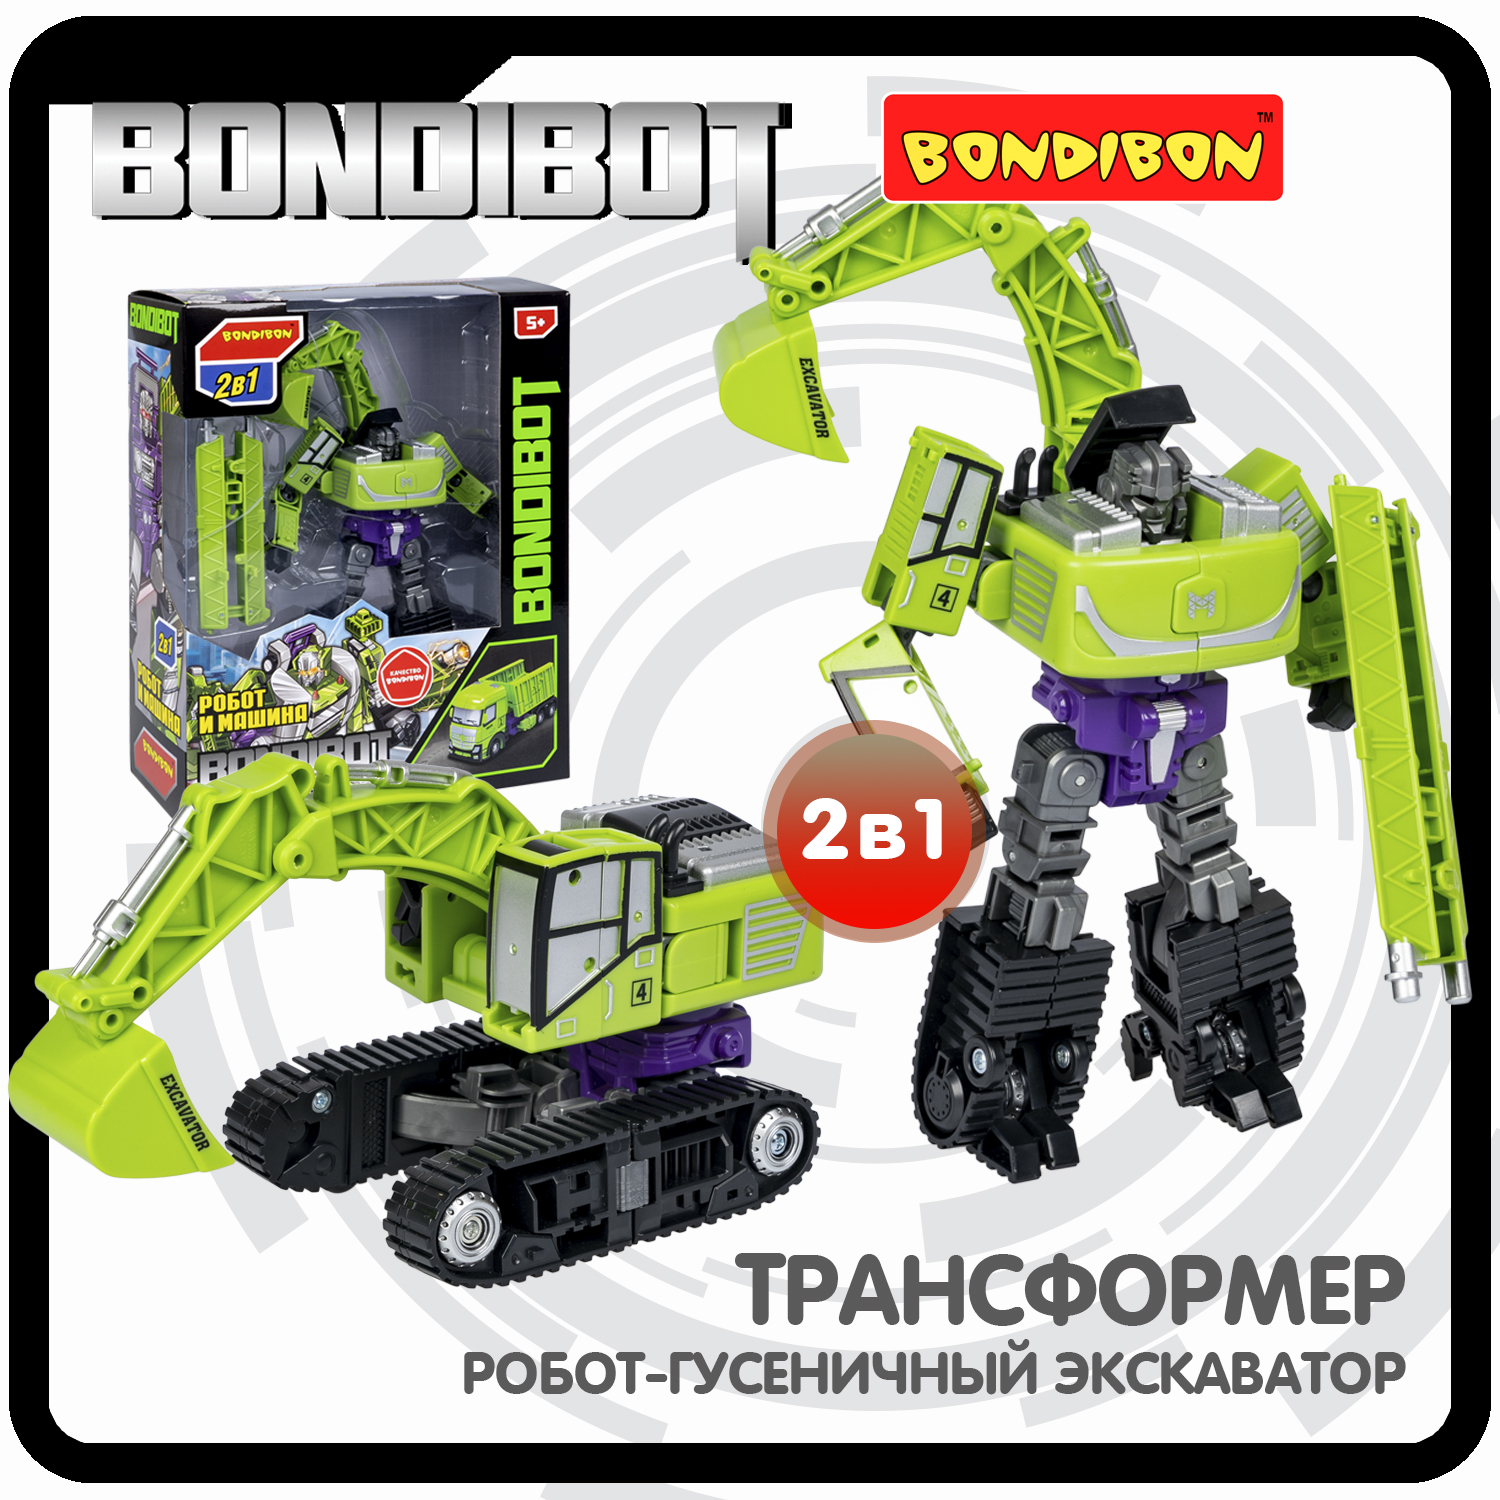 Трансформер 2в1 BONDIBOT Bondibon робот-строит.техника гусенич. экскаватор 28,5x23x9,5 см